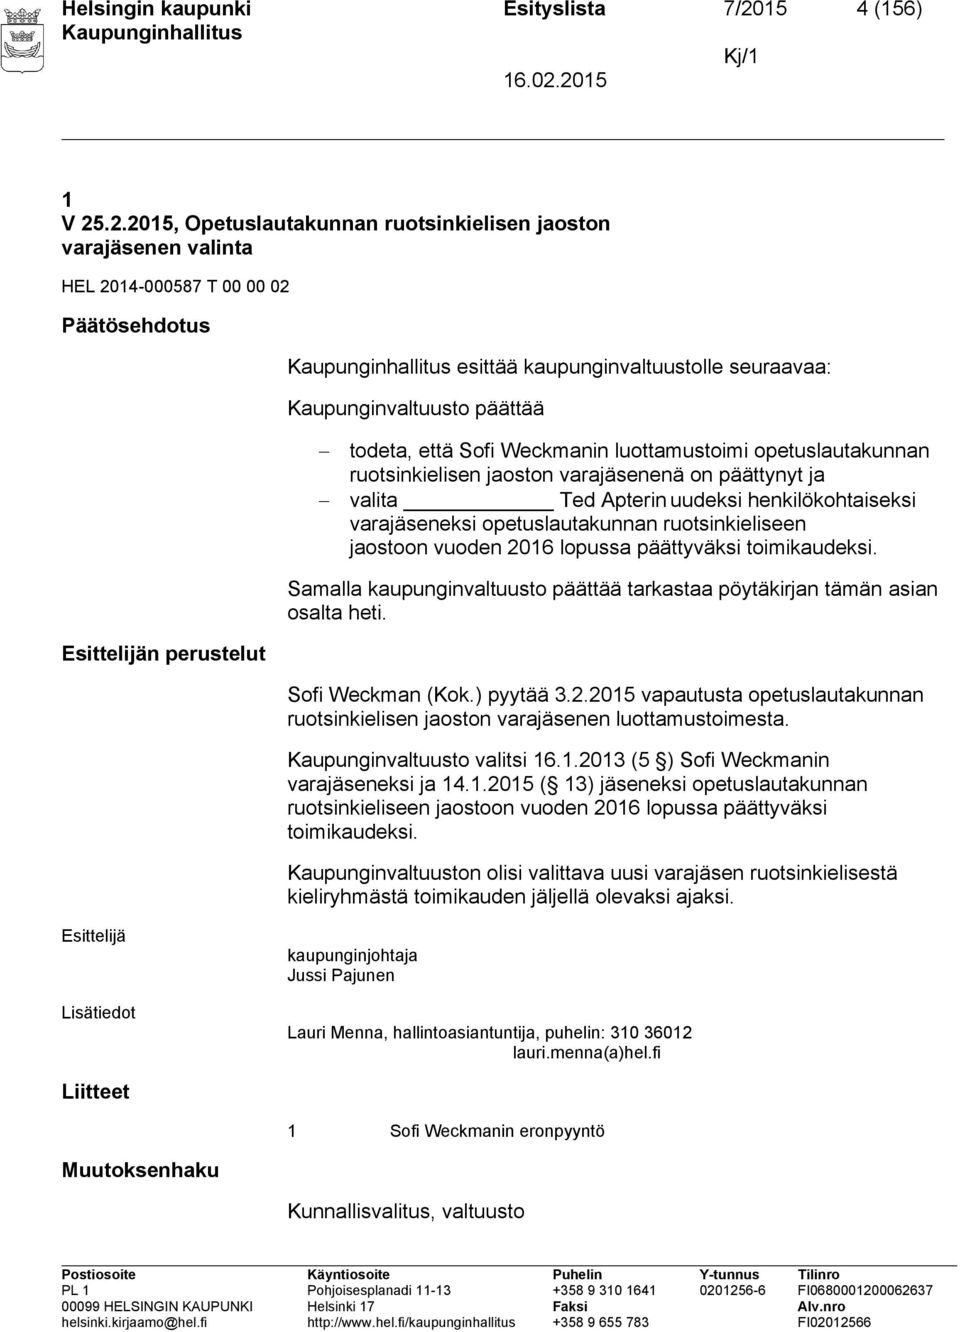 .2.2015, Opetuslautakunnan ruotsinkielisen jaoston varajäsenen valinta HEL 2014-000587 T 00 00 02 Päätösehdotus esittää kaupunginvaltuustolle seuraavaa: Kaupunginvaltuusto päättää todeta, että Sofi